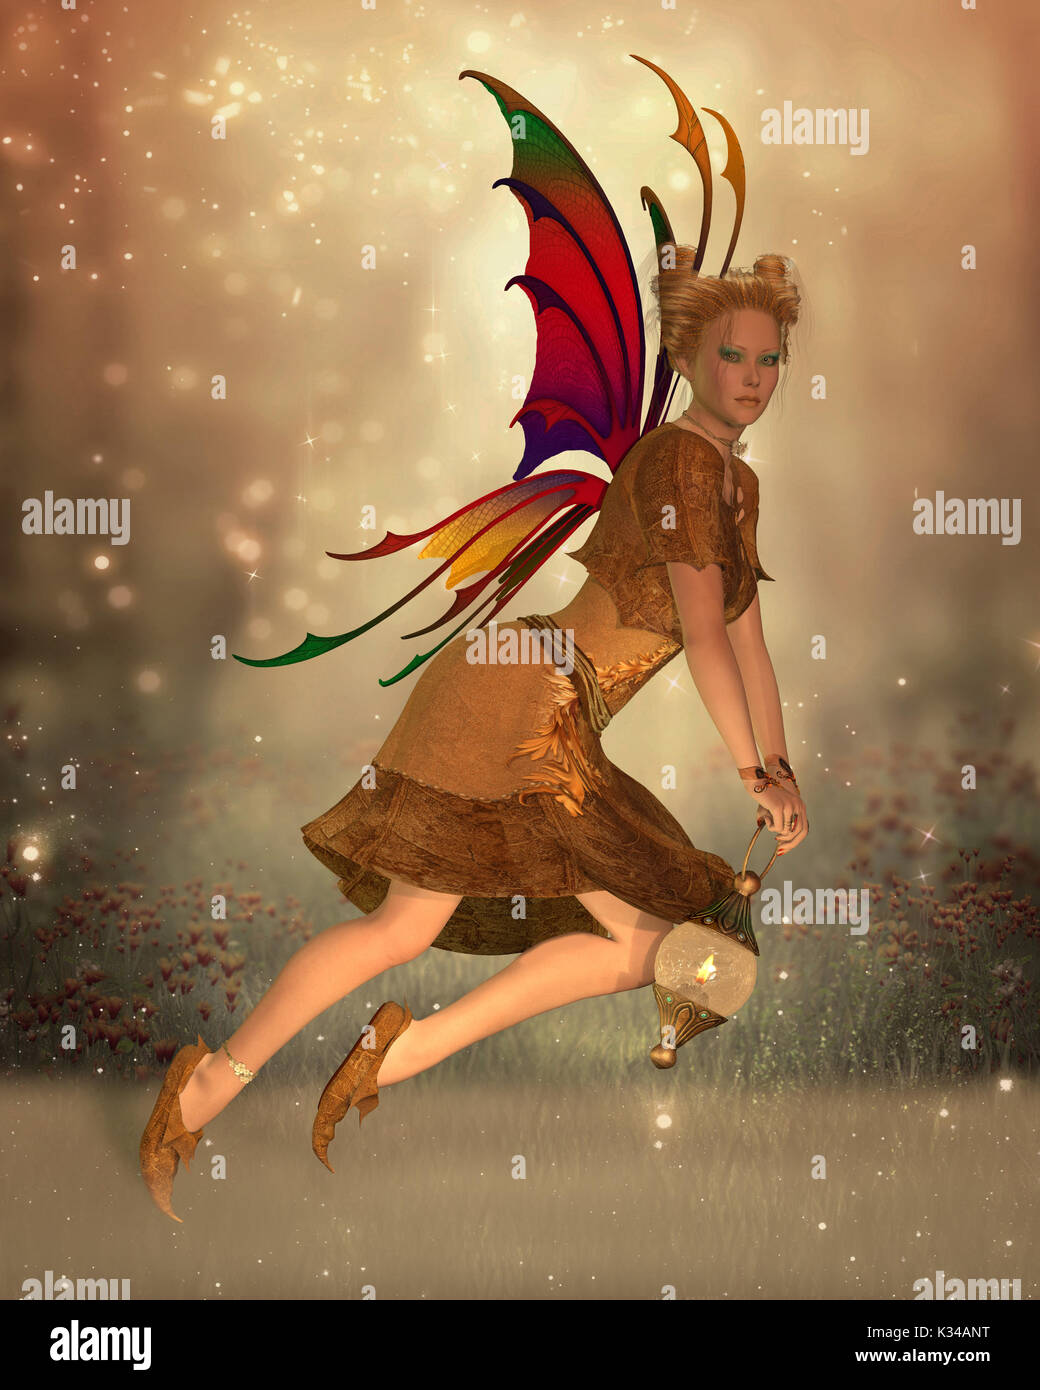 Fairy Isa vola attraverso la foresta magica al tramonto in possesso di una lanterna luminosa per illuminare il suo cammino. Foto Stock